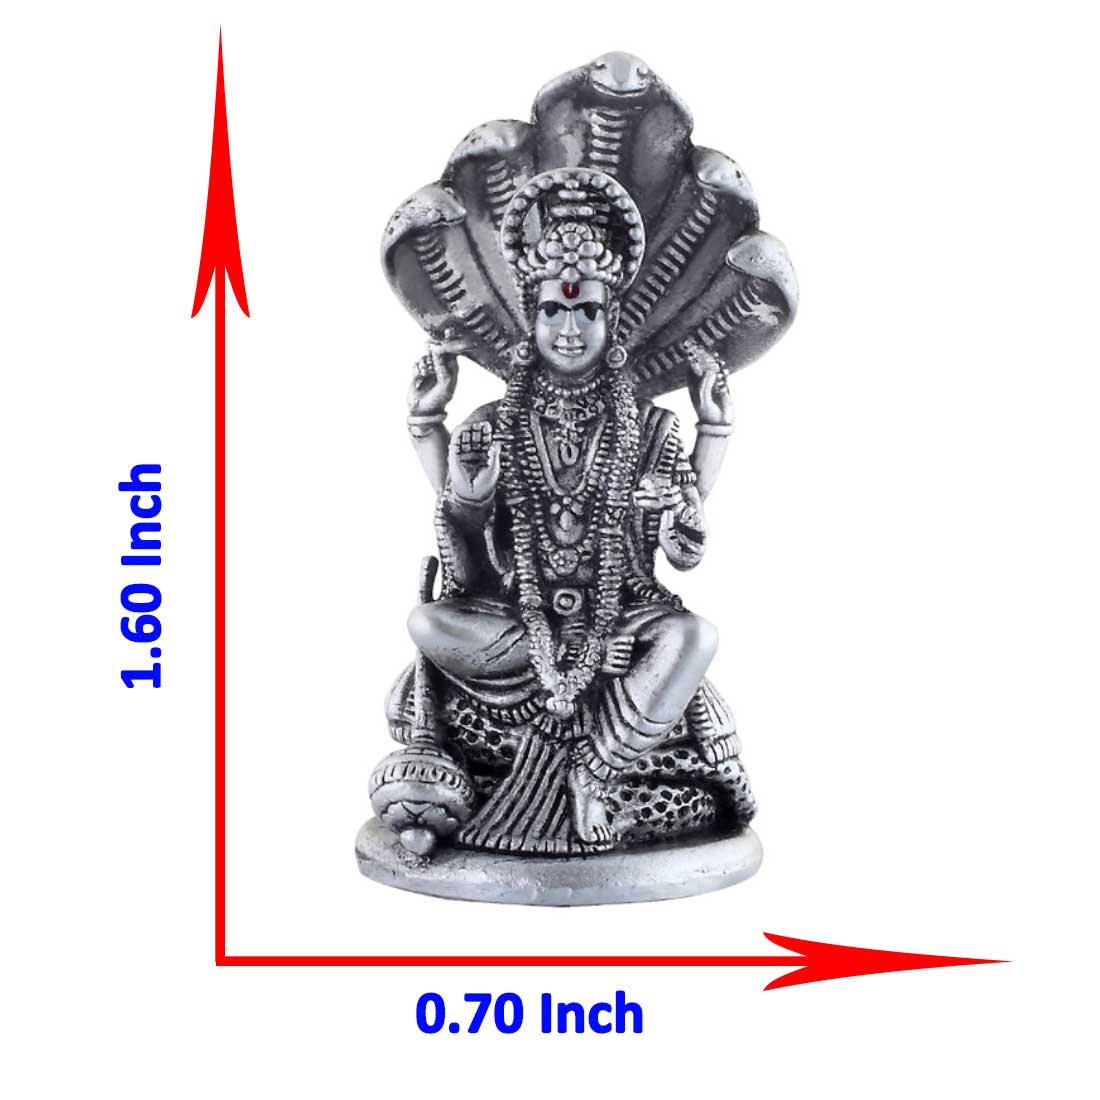 size of vishnu idol